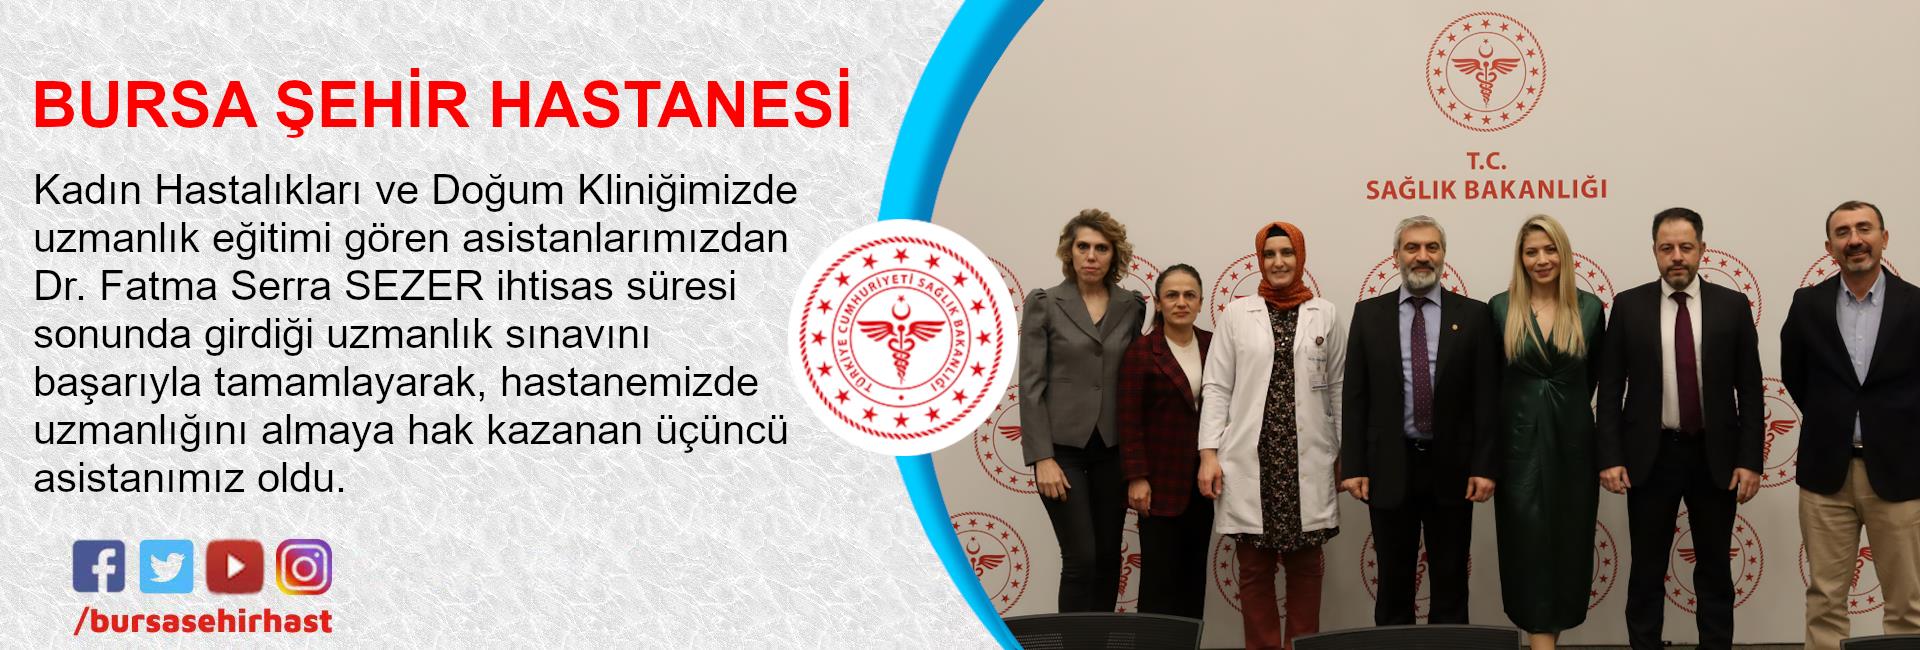 Dr. Fatma Serra SEZER ihtisas süresi sonunda girdiği uzmanlık sınavını başarıyla tamamlayarak, Kadın Hastalıkları ve Doğum Uzmanı unvanını almaya hak kazanmıştır.